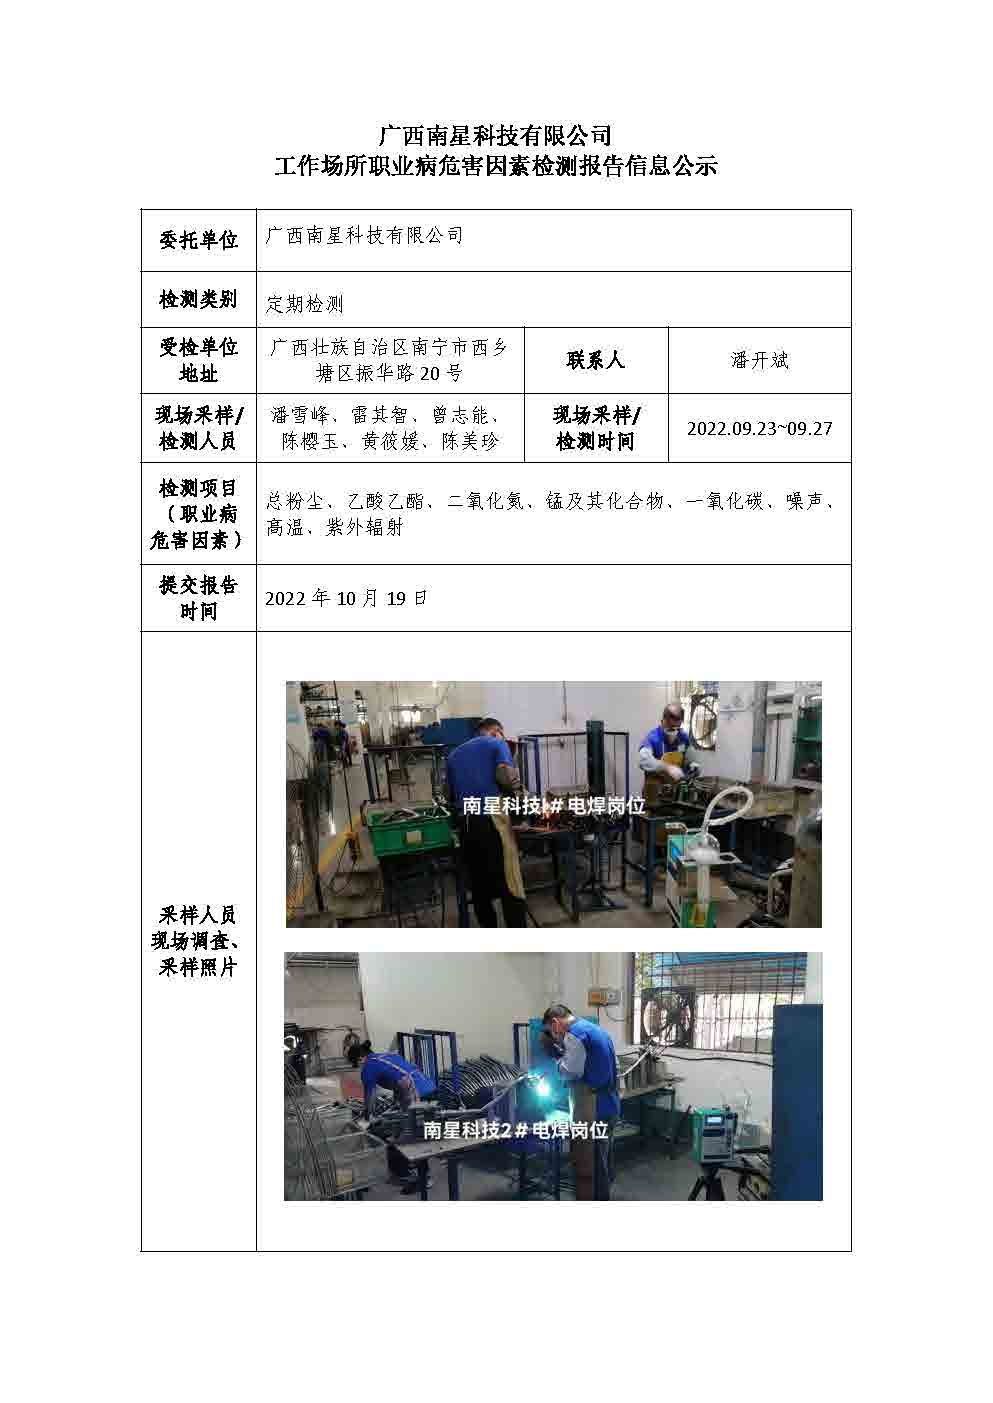 广西南星科技有限公司工作场所职业病危害因素检测报告信息公示